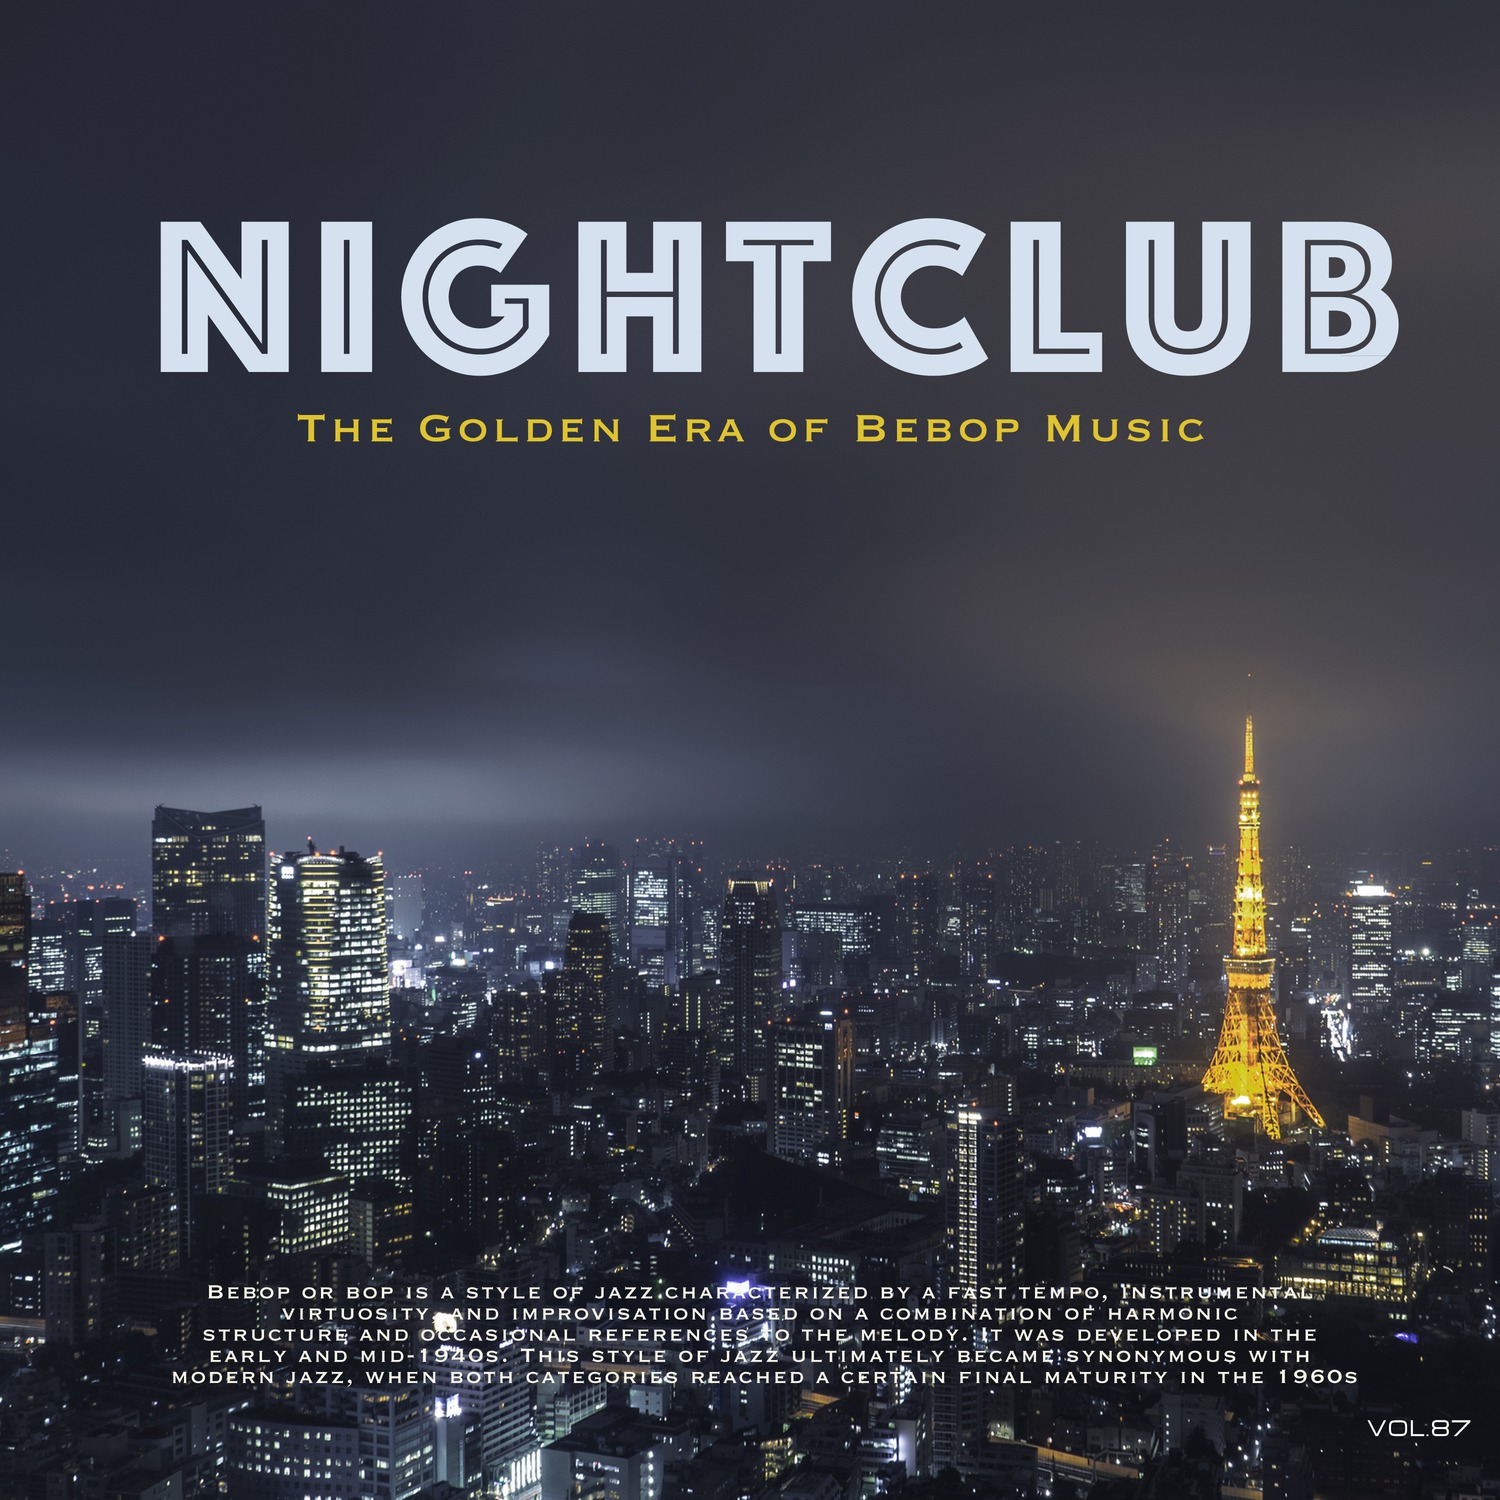 Nightclub, Vol. 87 (The Golden Era of Bebop Music)